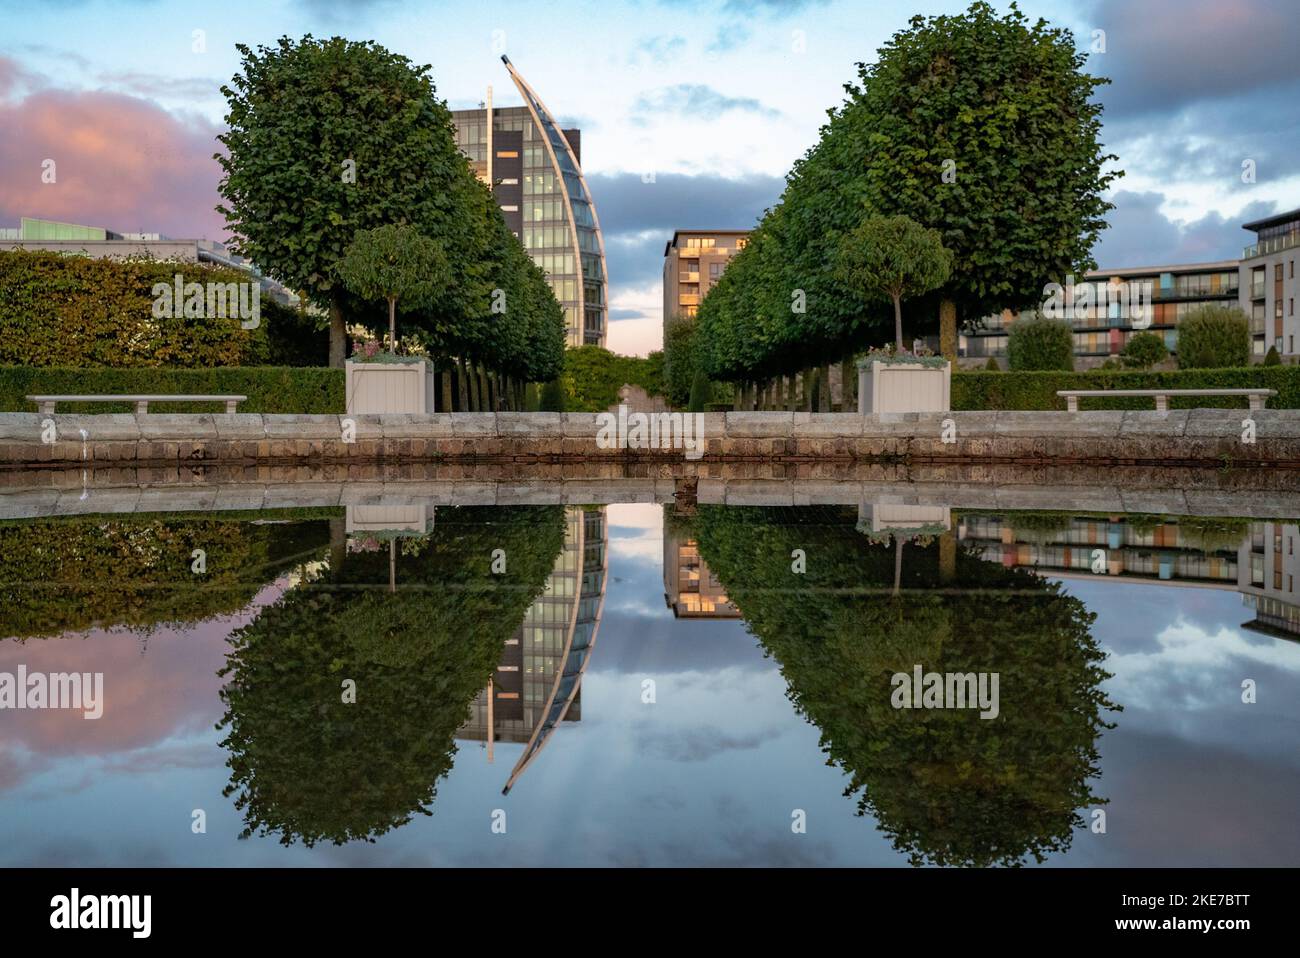 Das Irish Museum of Modern Art in Dublin Irland mit dekorativen symmetrischen Bäumen Stockfoto